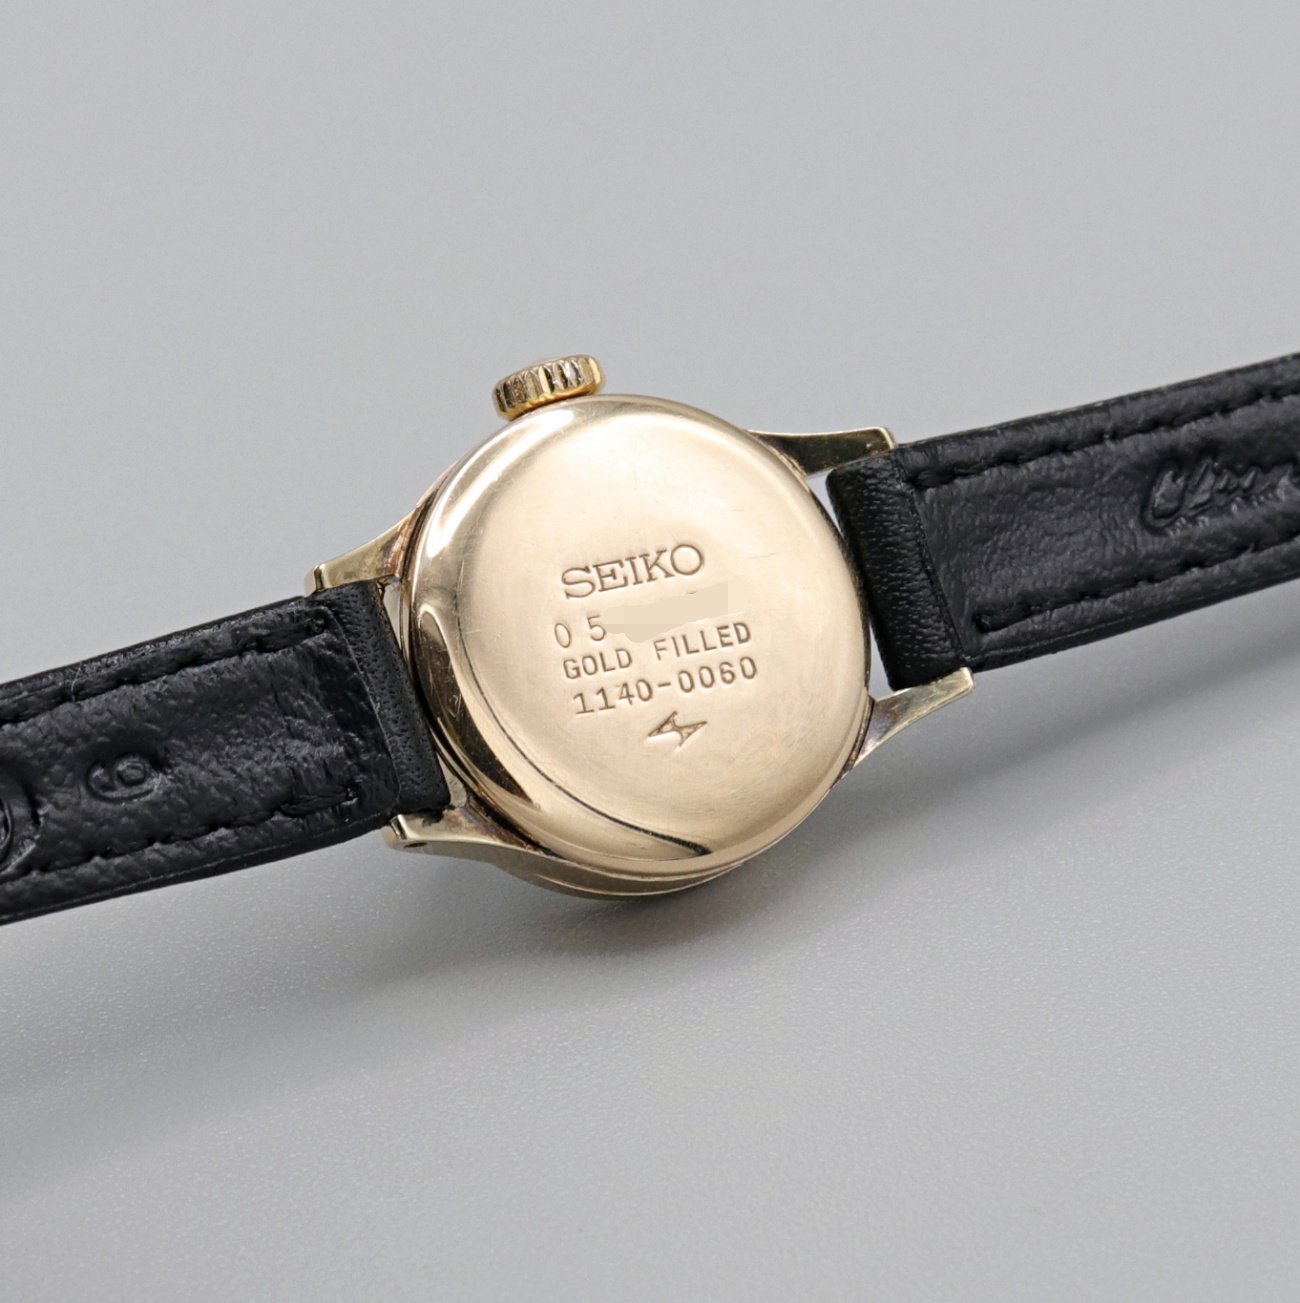 ヴィンテージ セイコー SEIKO Special カクテル ウォッチ - 腕時計